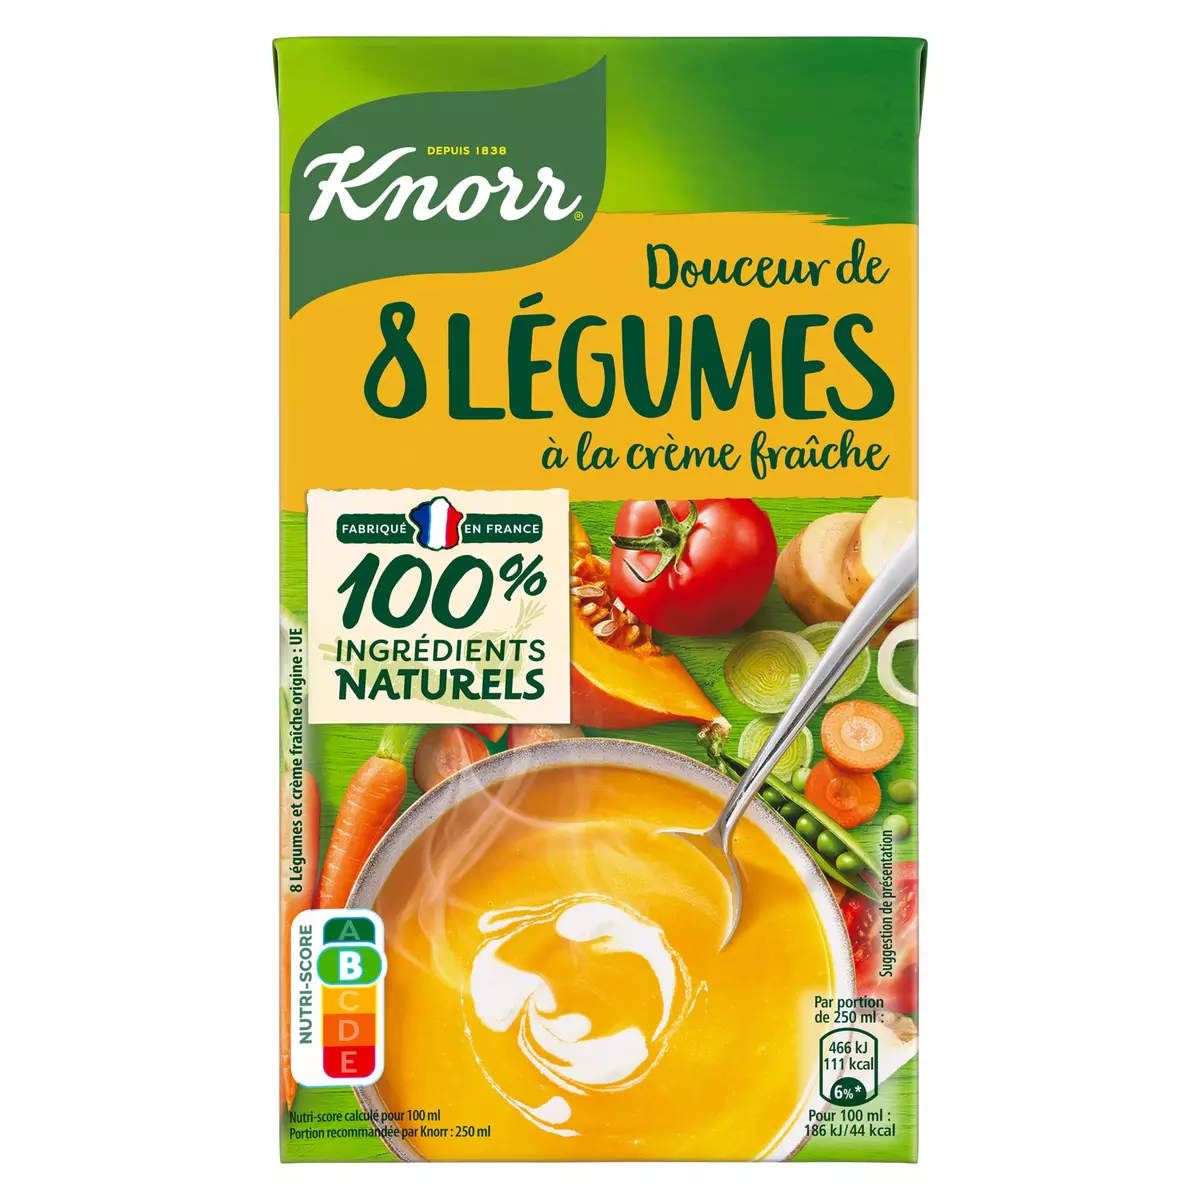 KNORR Soupe douceur de 8 légumes à la crème fraîche fabriqué en Alsace 4 personnes 1l